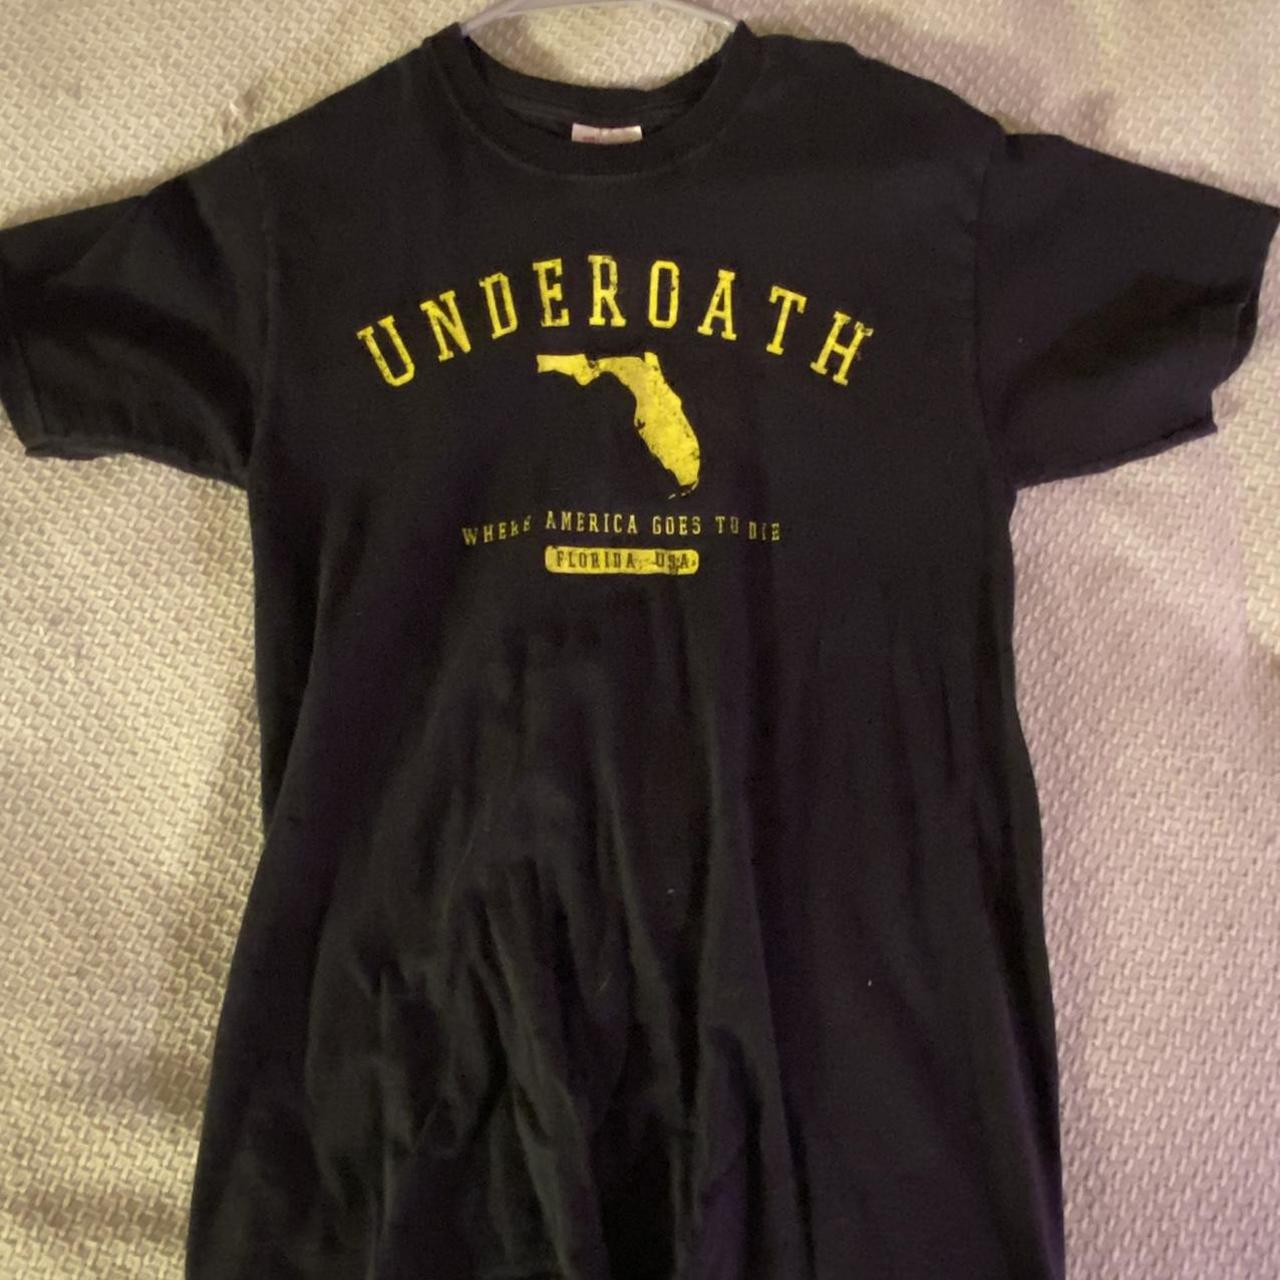 Underoath Band Tshirt Adult Small #underoath #merch